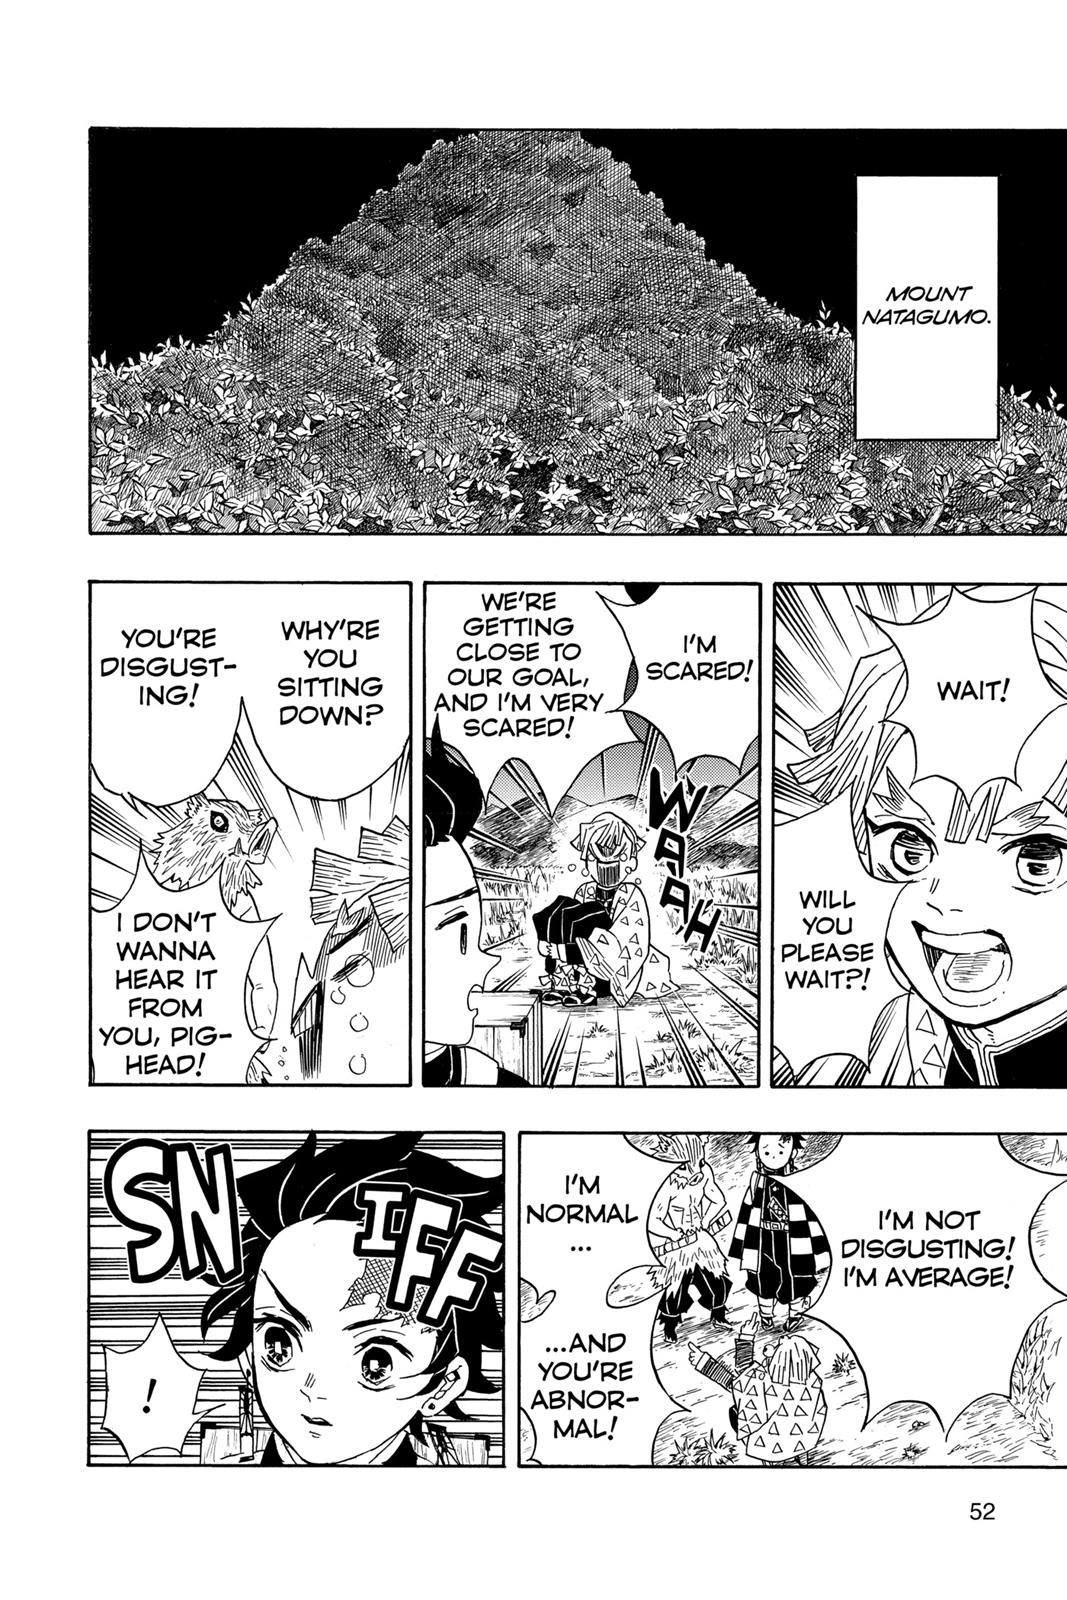 Demon Slayer Manga Manga Chapter - 28 - image 2